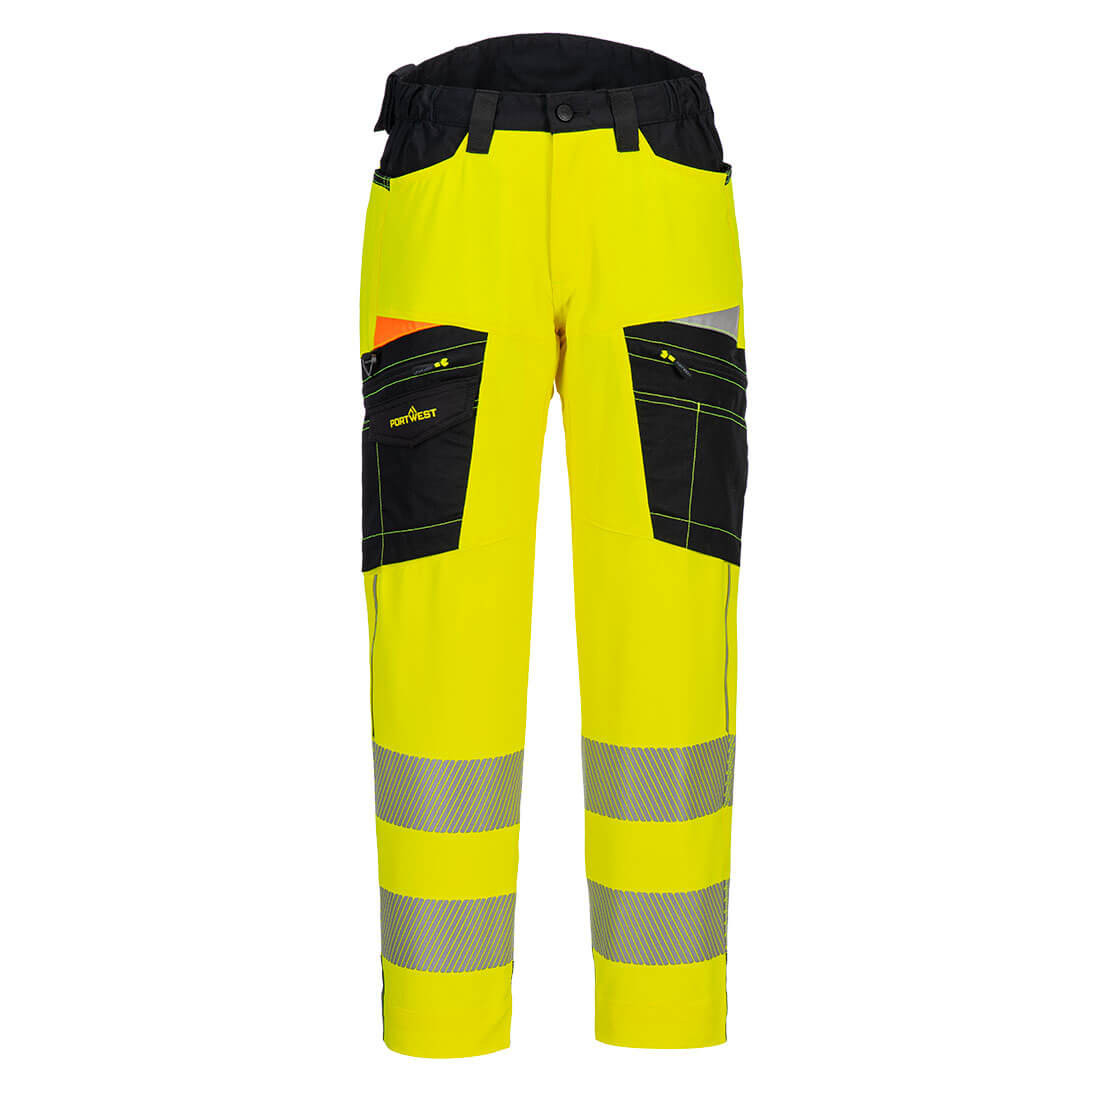 Pantalones de alta visibilidad DX4 Hi-Vis Service - Ropa de protección